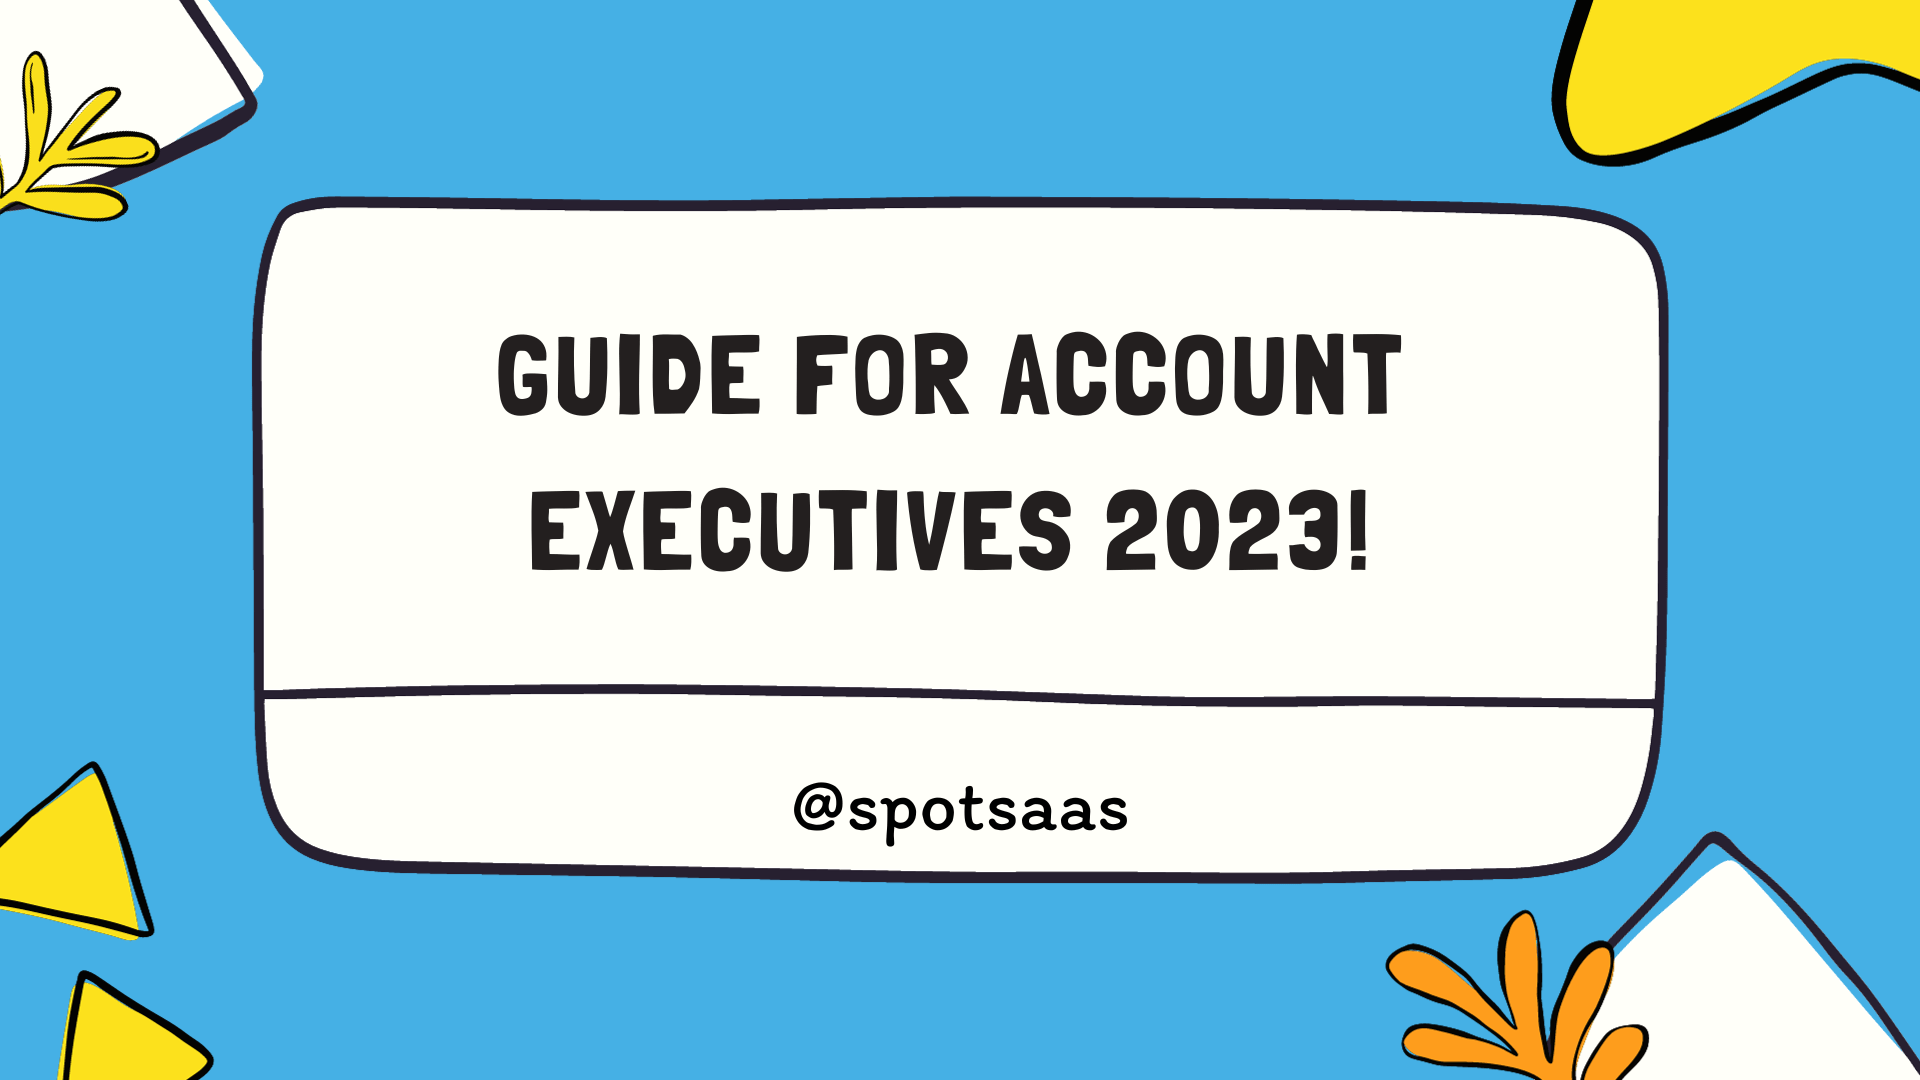 Account Executives